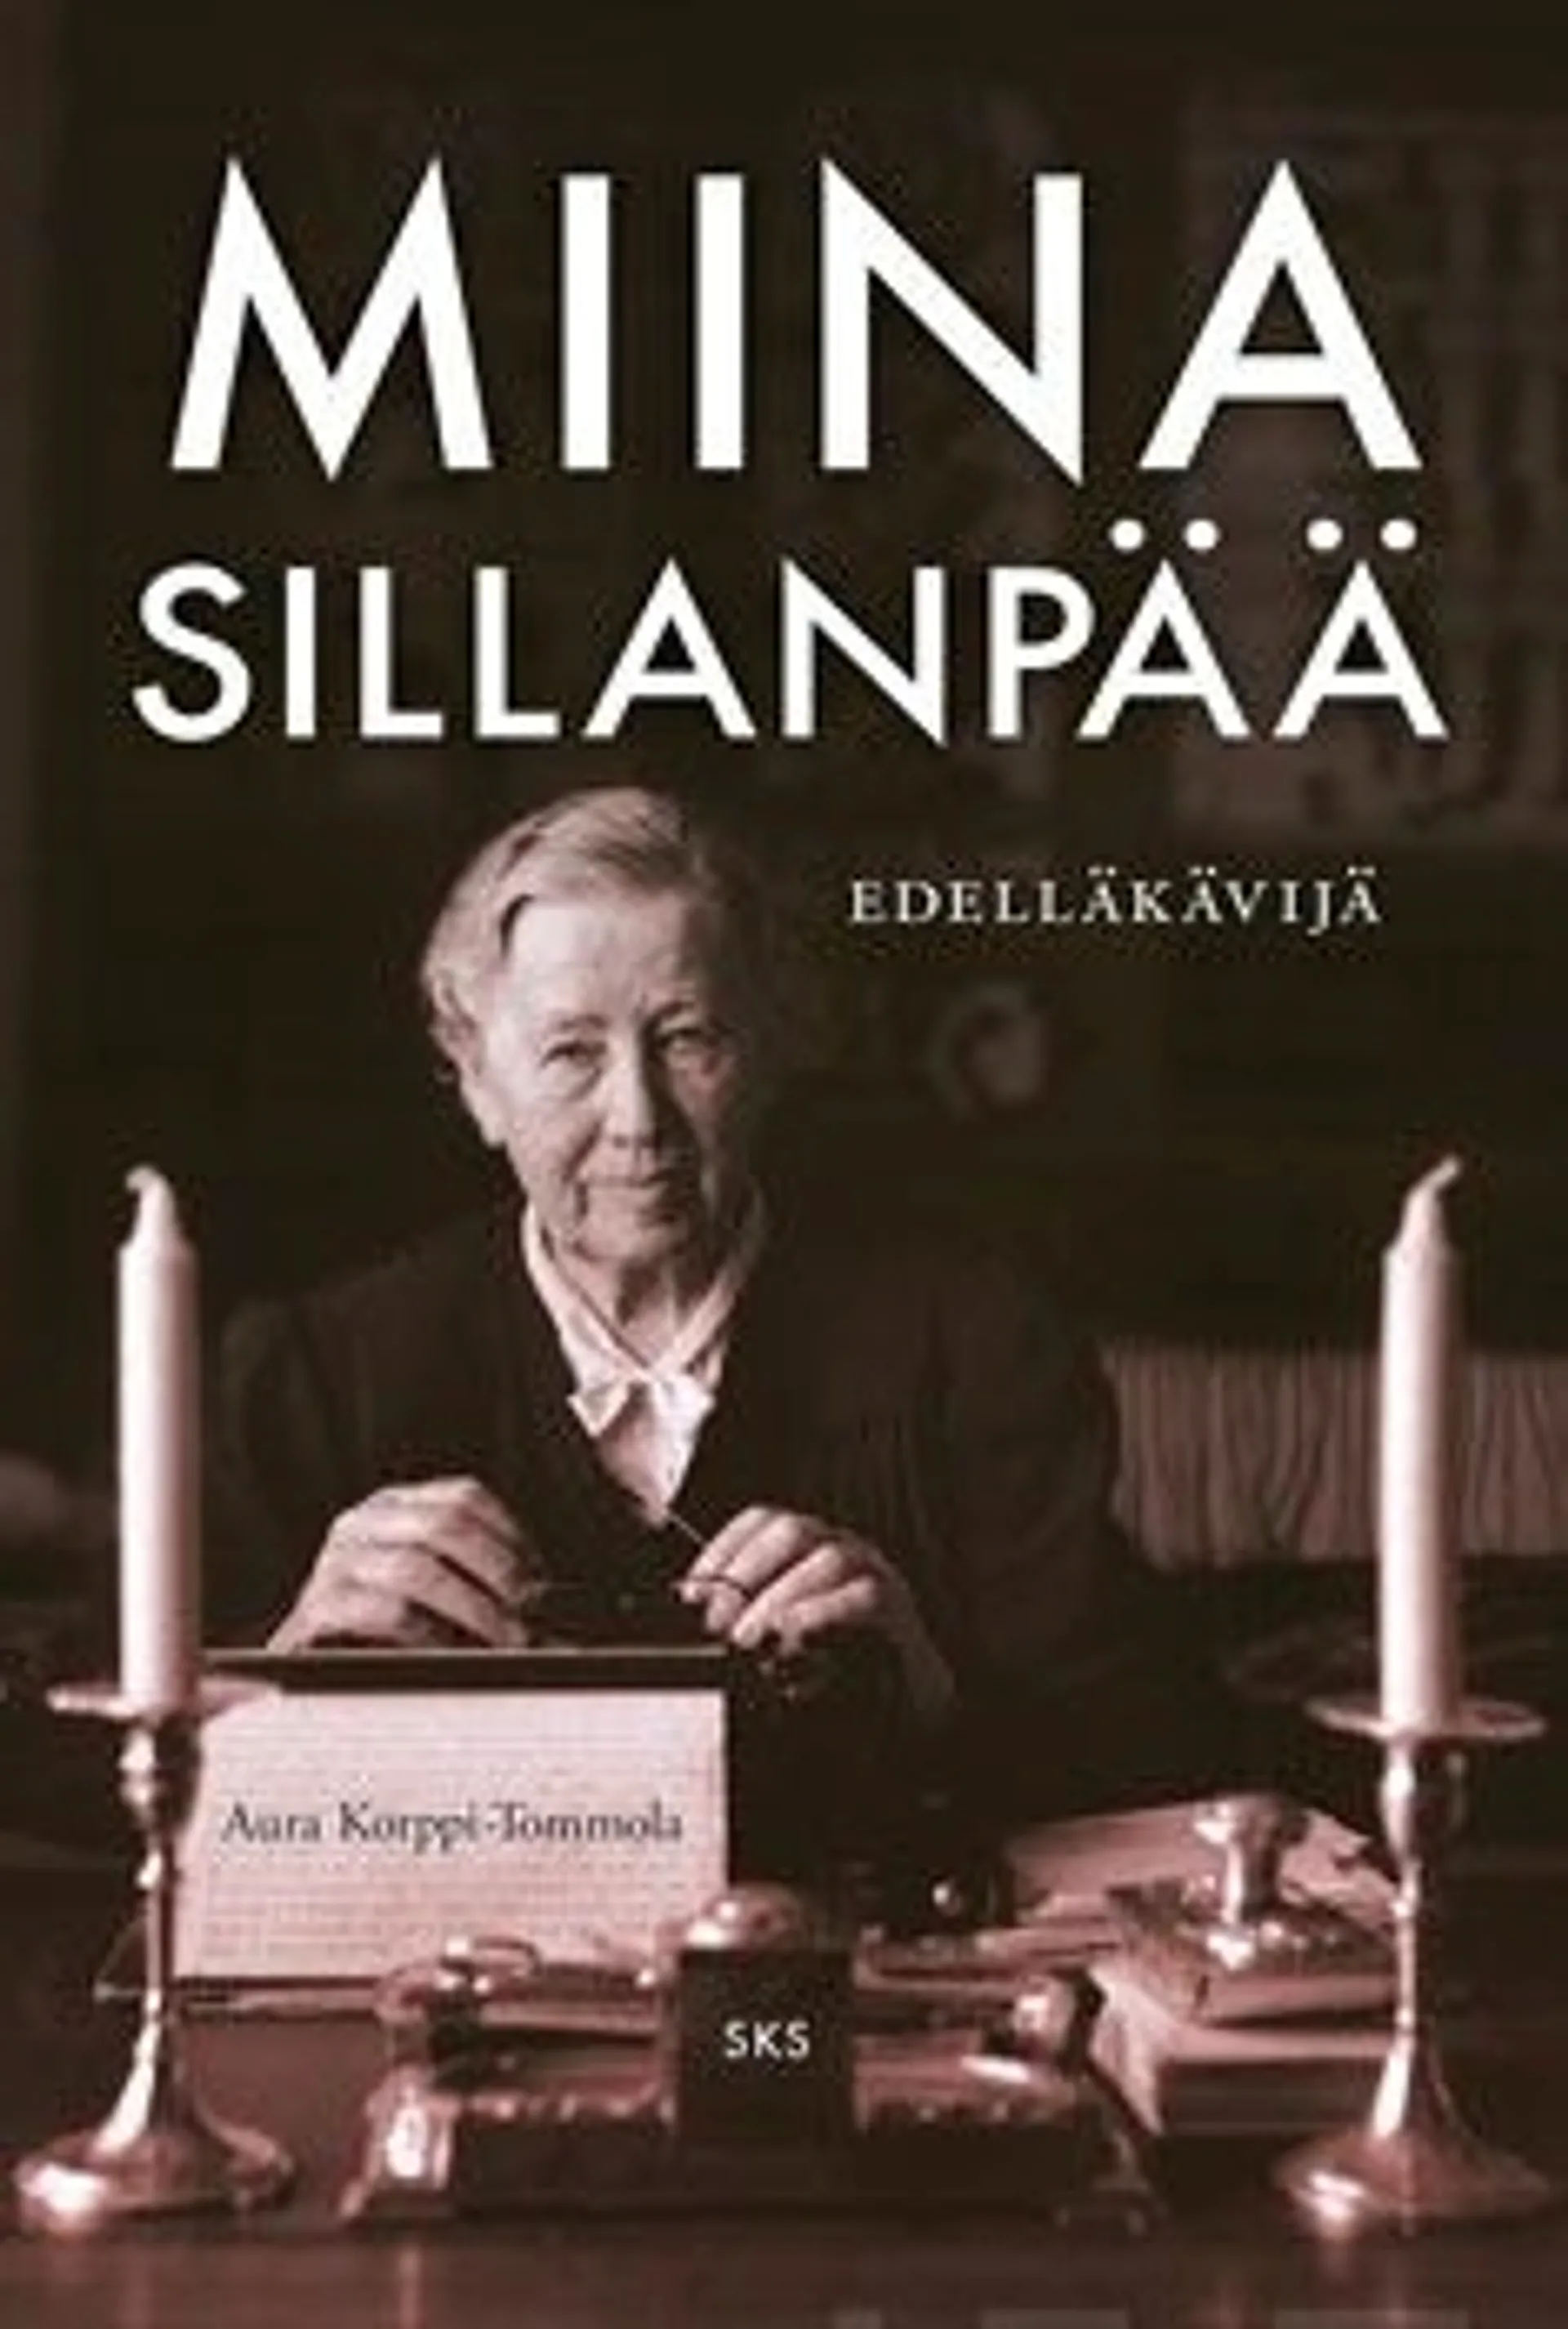 Korppi-Tommola, Miina Sillanpää